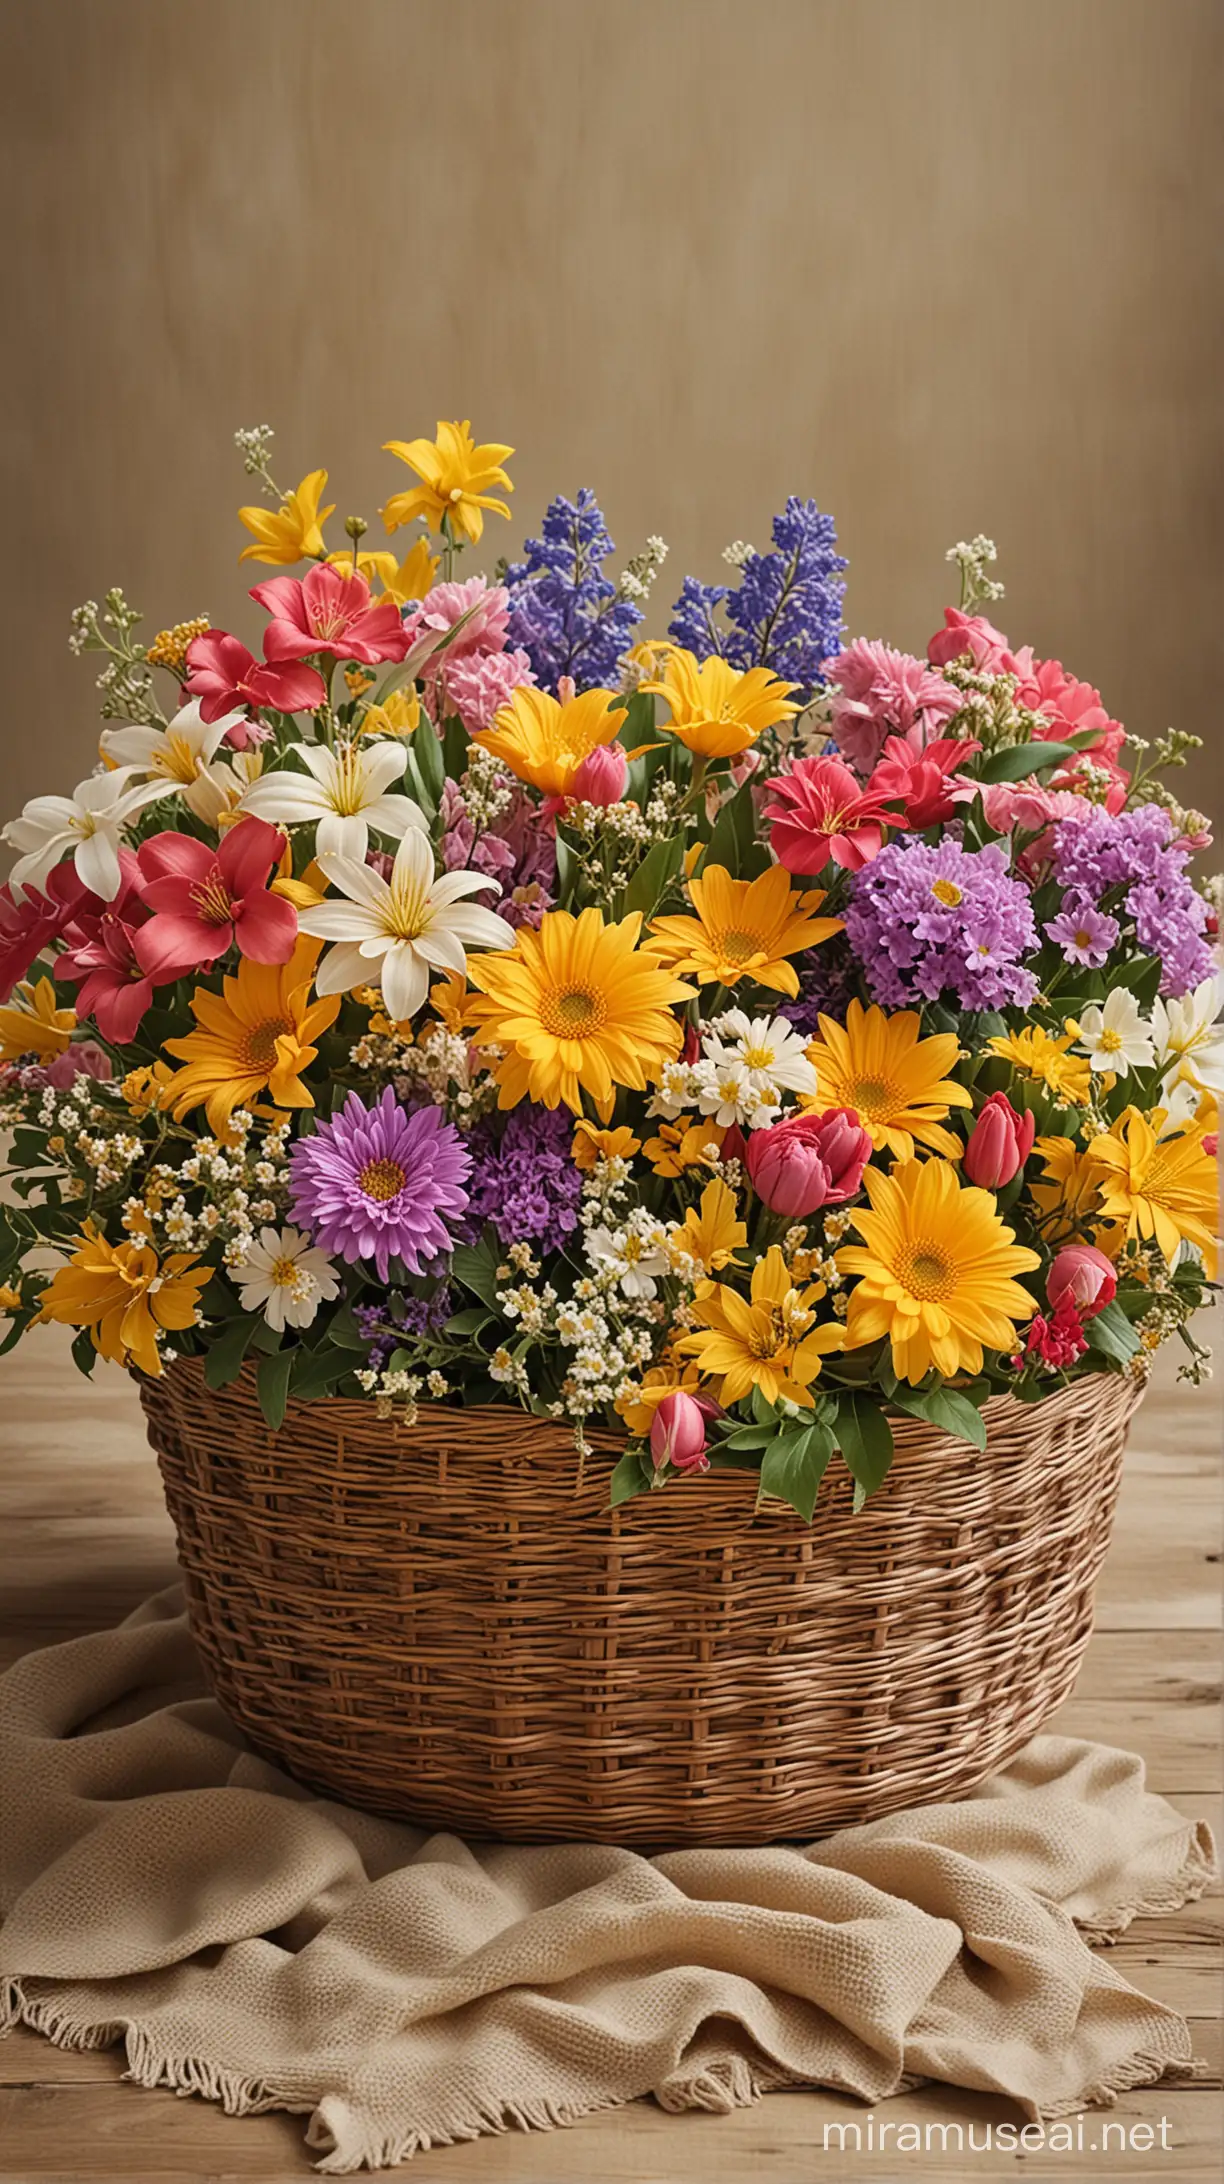 Vibrant SpringSummer Flower Basket with Golden Accents